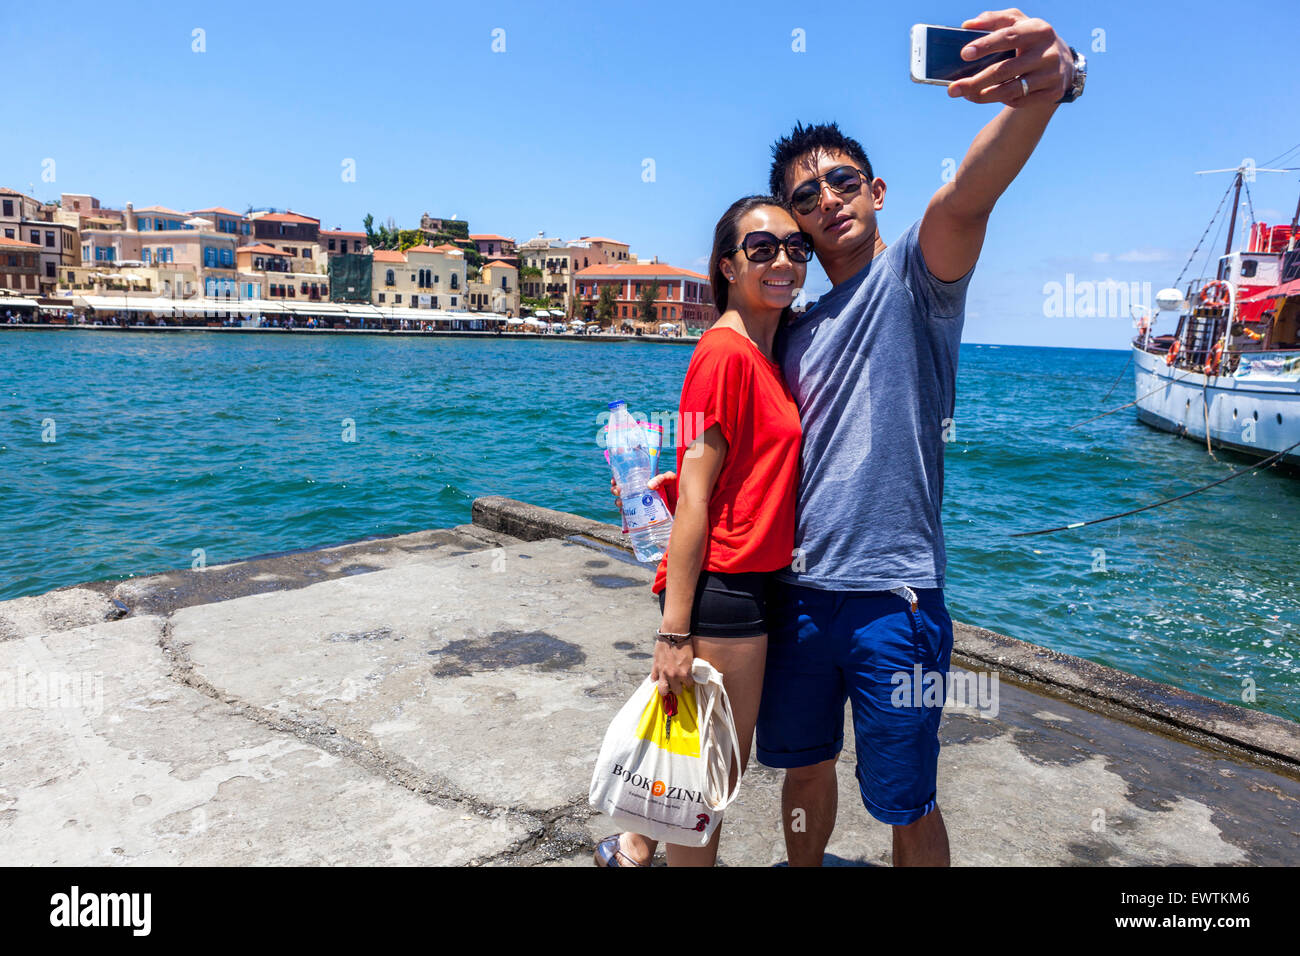 Touristes prenant Selfie sur smartphone Mobil Phone Snapshot jeune couple heureux homme femme Vieux vénitien Port Chania Crète Grèce Europe Tourisme Banque D'Images